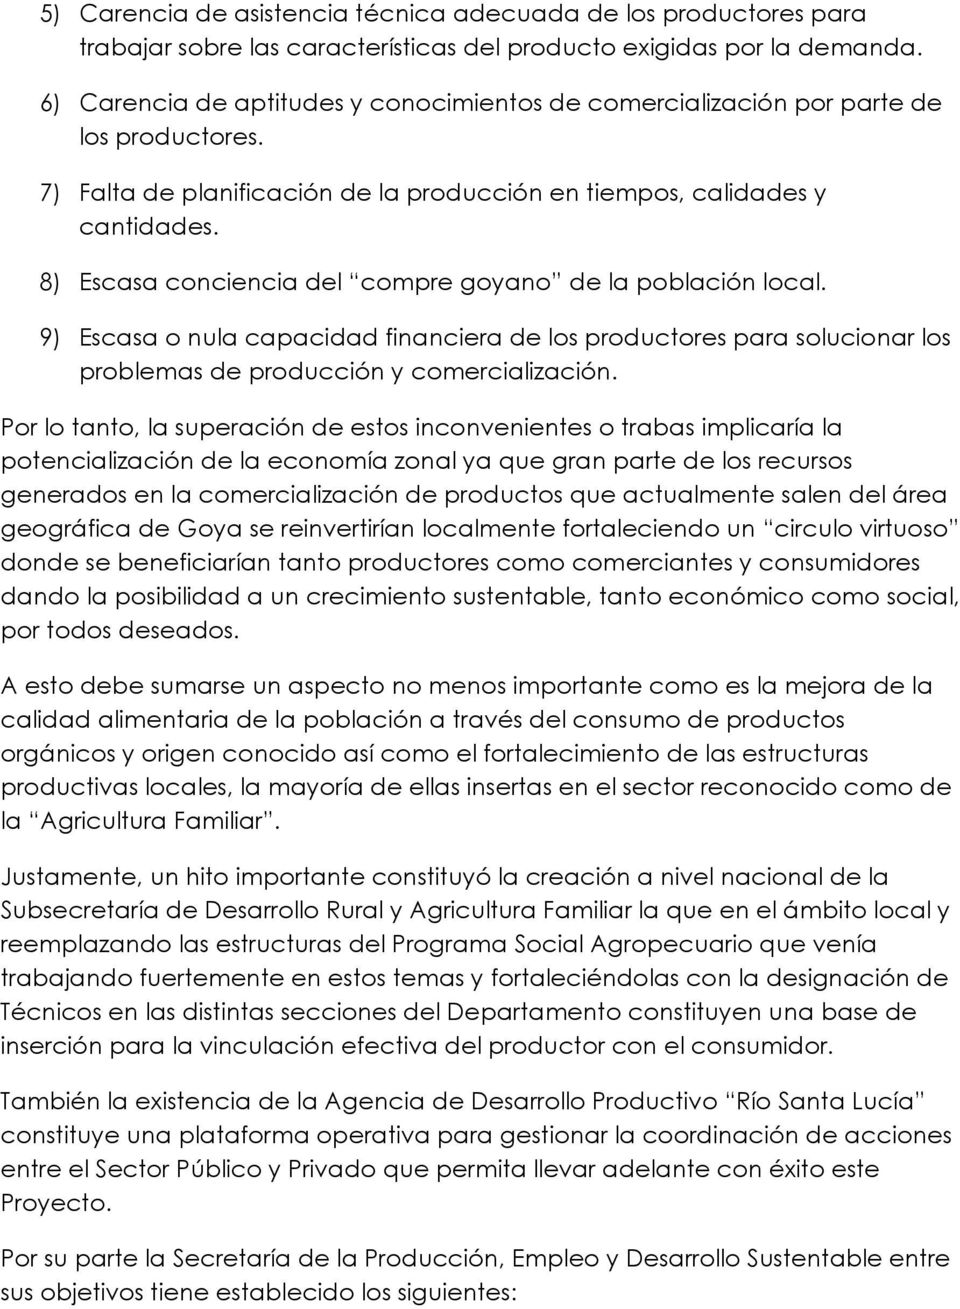 8) Escasa conciencia del compre goyano de la población local. 9) Escasa o nula capacidad financiera de los productores para solucionar los problemas de producción y comercialización.